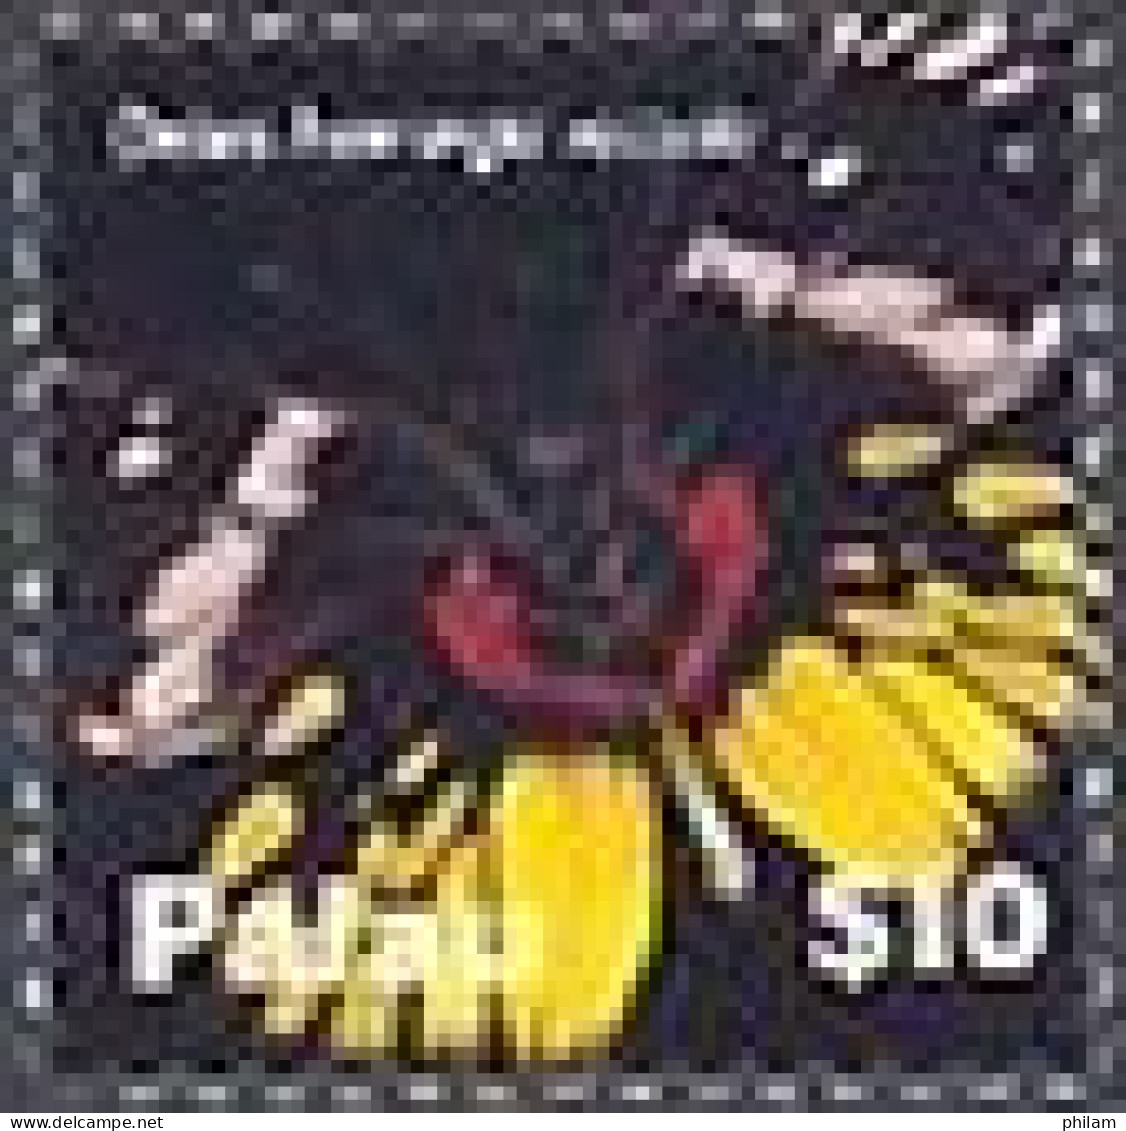 PALAU 2007 - Série Courante - Papillons - Hautes Valeurs - $ 5  Et $ 10 - Papillons